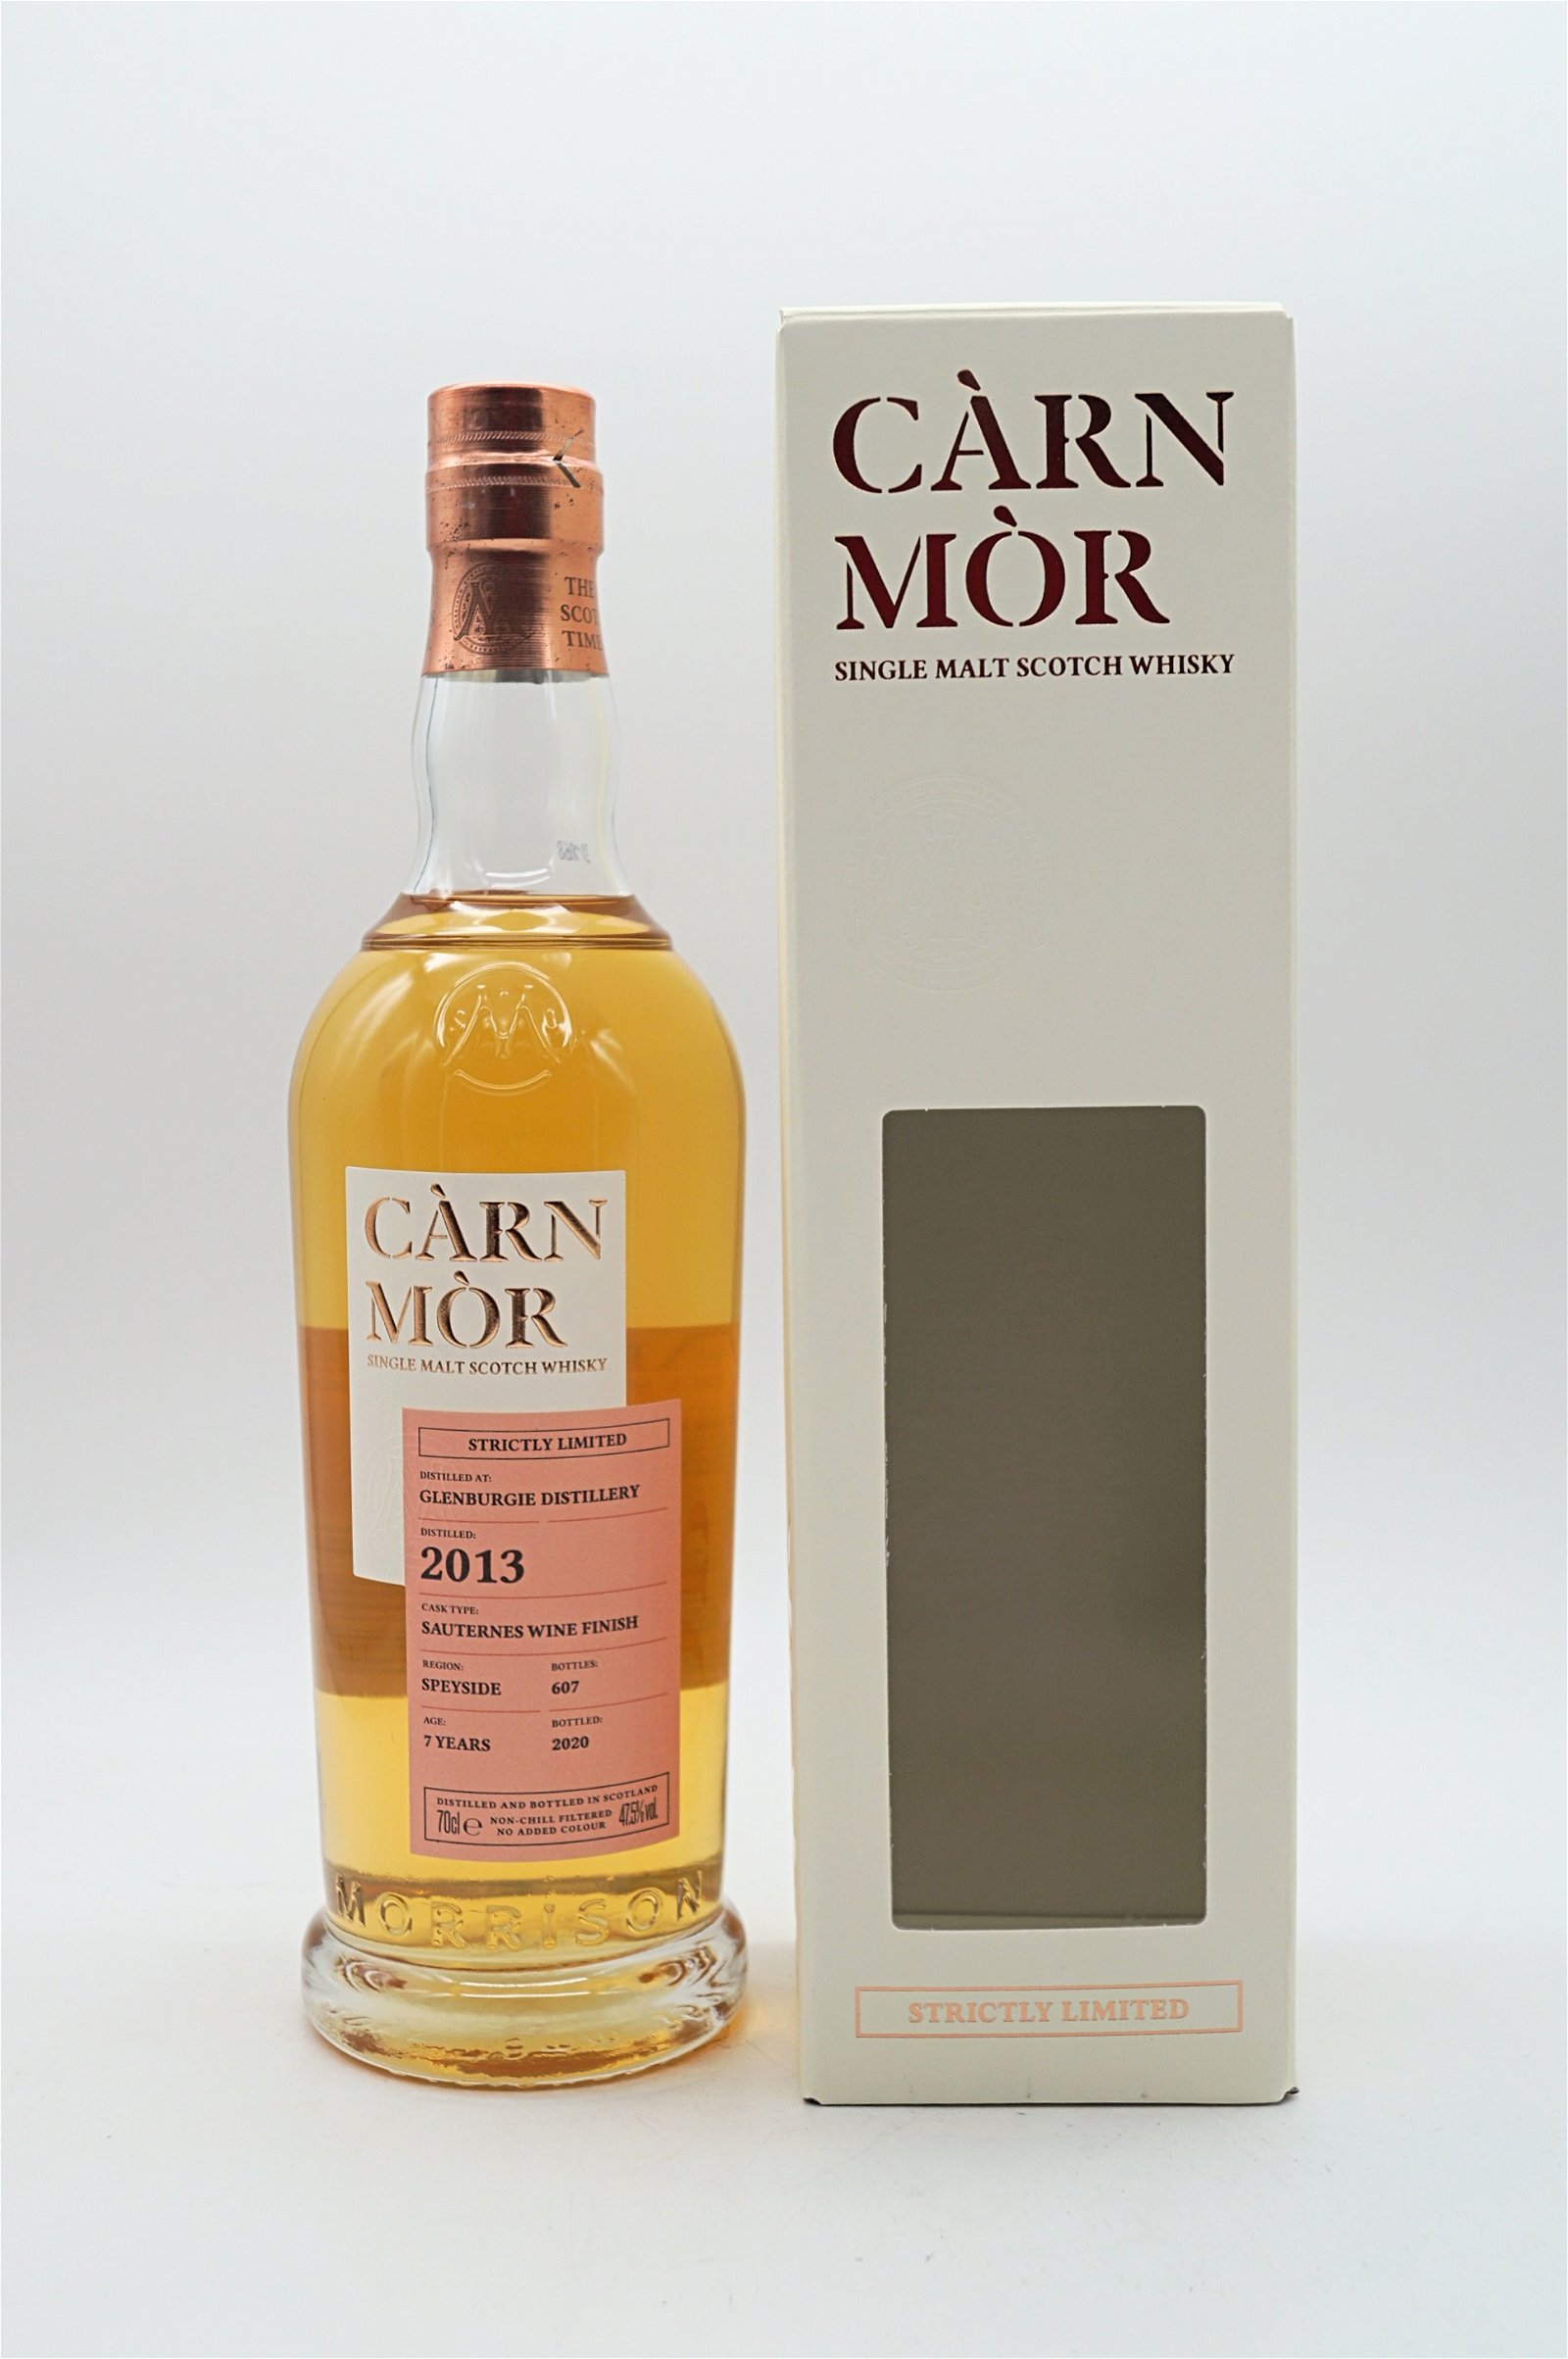 Carn Mor Glenburgie 2013 Sauternes Wine Finish Strictly Limited Single Malt Scotch Whisky